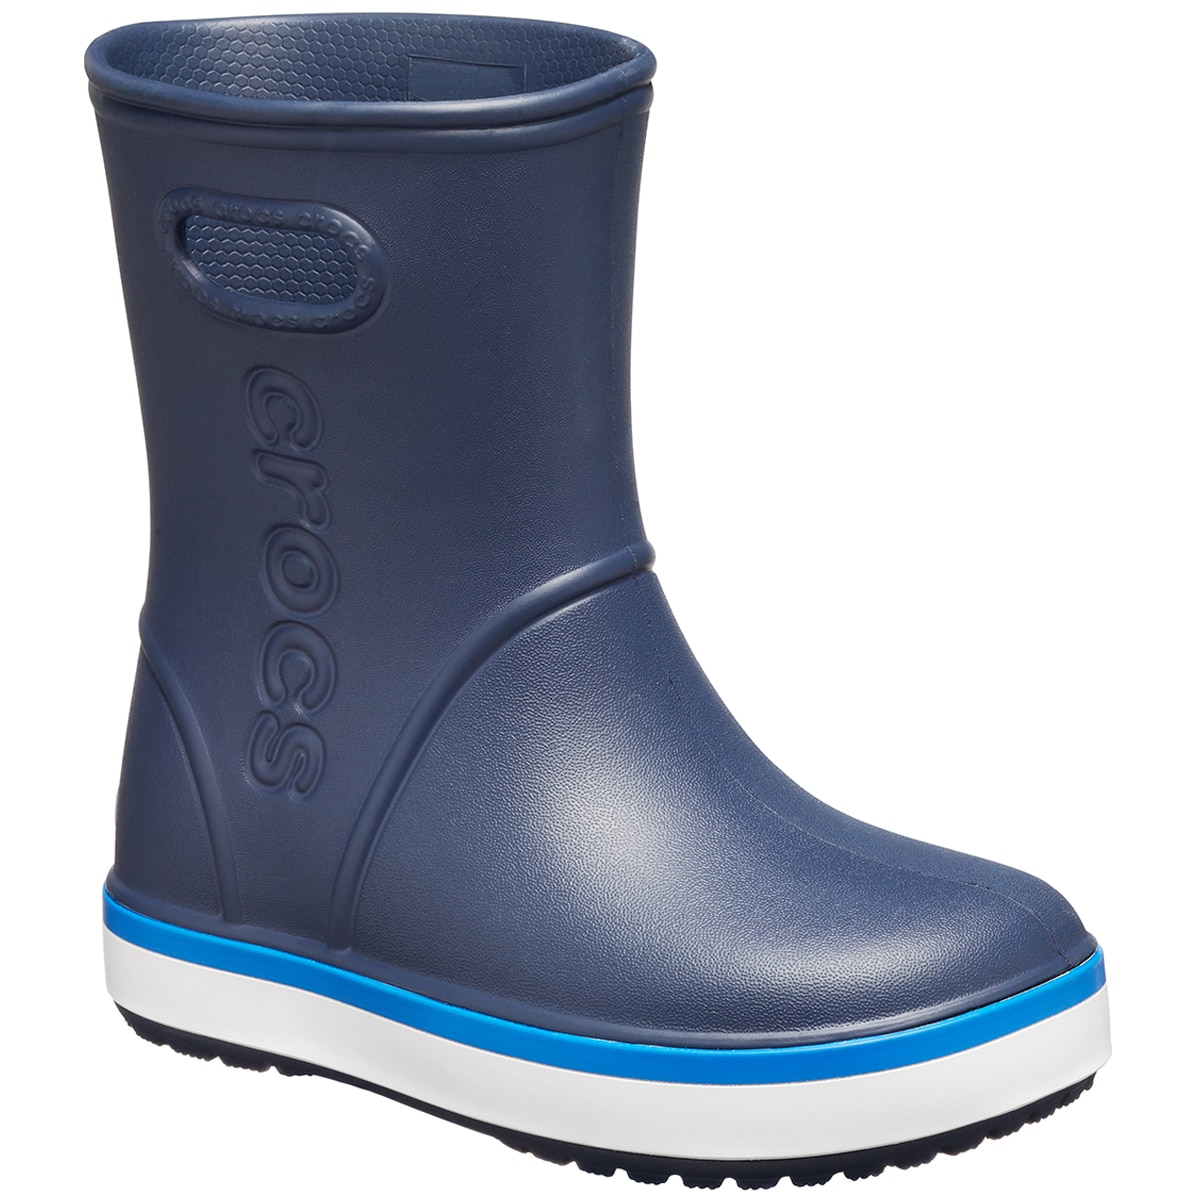 Crocs Kids Rain Boot - Navy/Cobalt